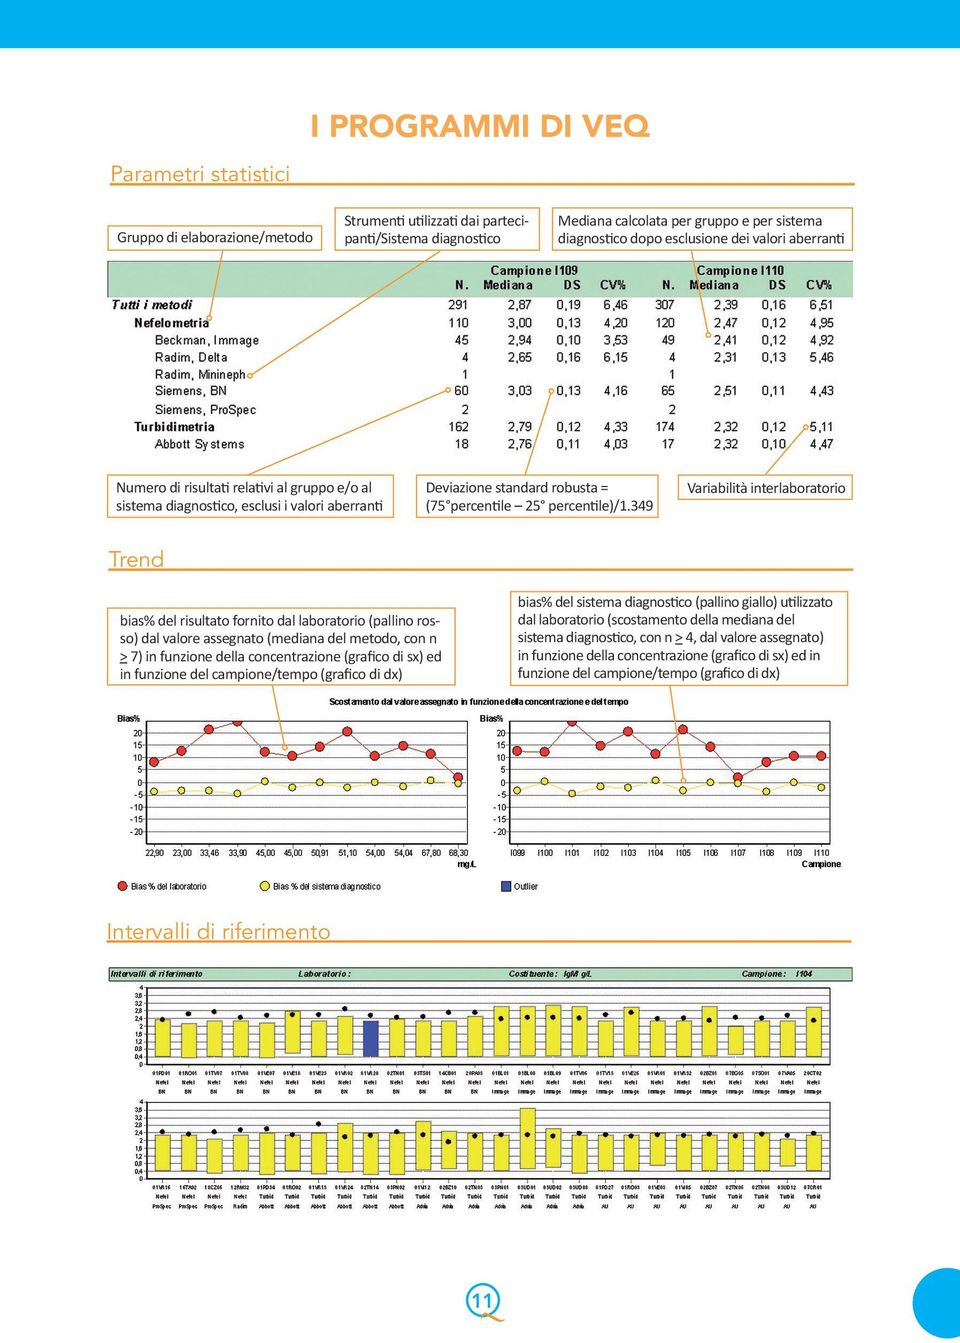 349 Variabilità interlaboratorio Trend bias% del sistema diagnostico (pallino giallo) utilizzato dal laboratorio (scostamento della mediana del sistema diagnostico, con n > 4, dal valore assegnato)